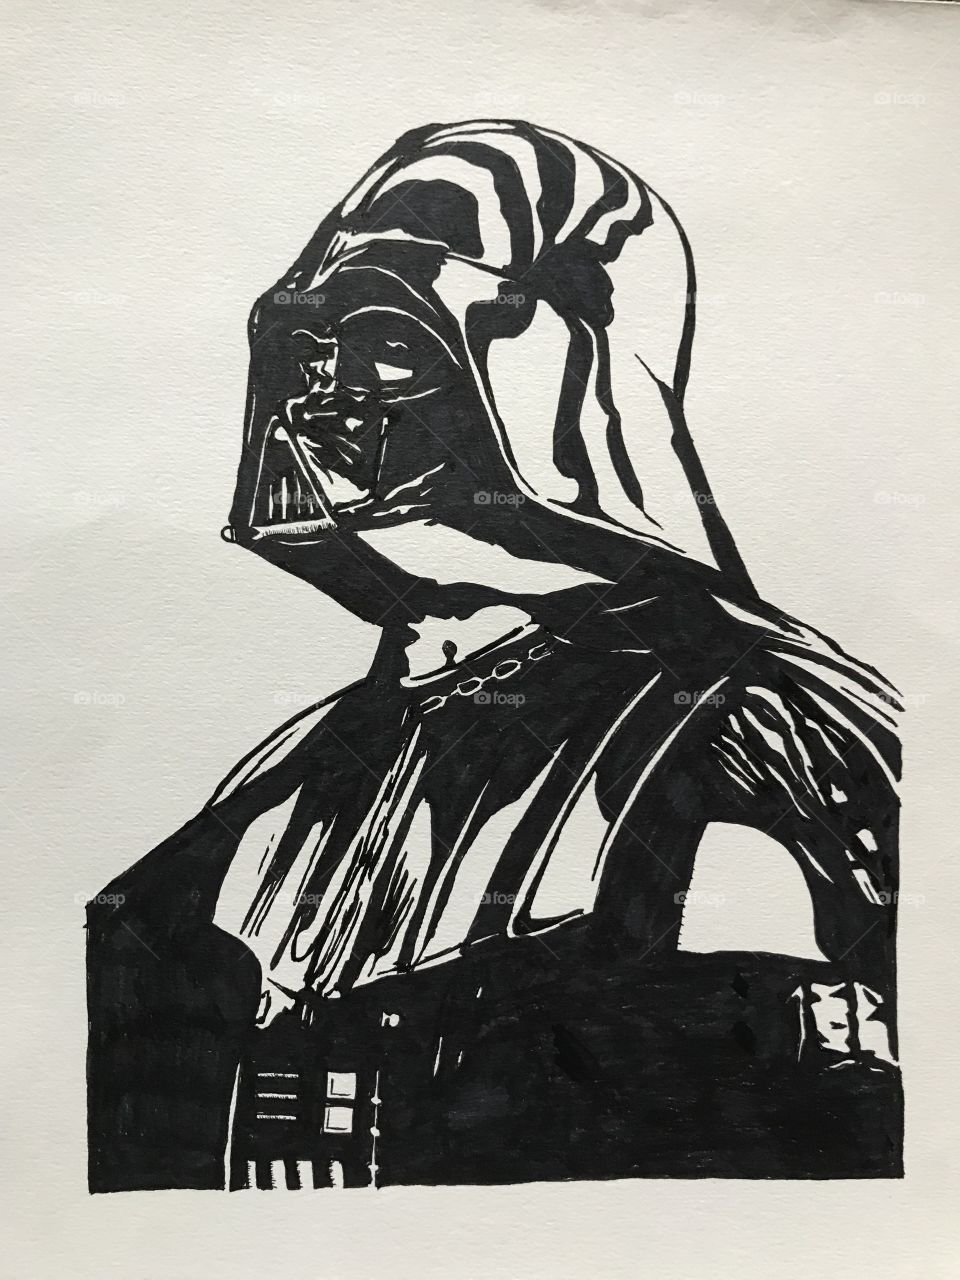 Death Vader